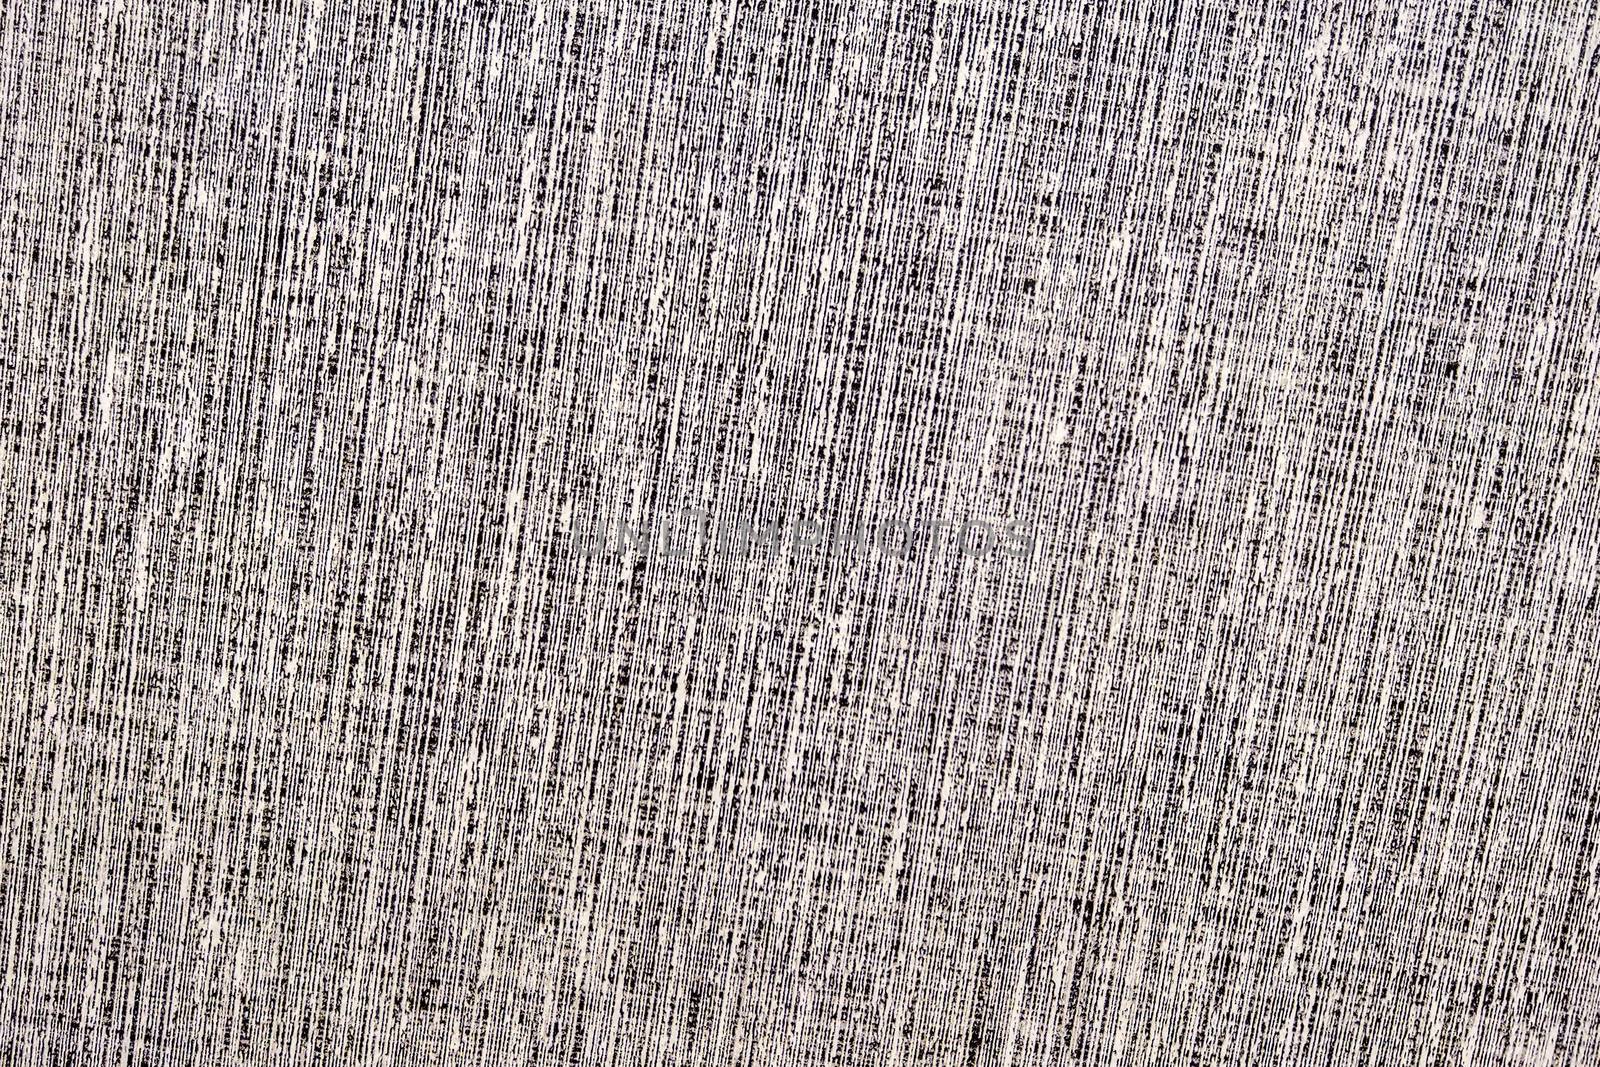 Texture of kitchen worktop, background, texture pattern